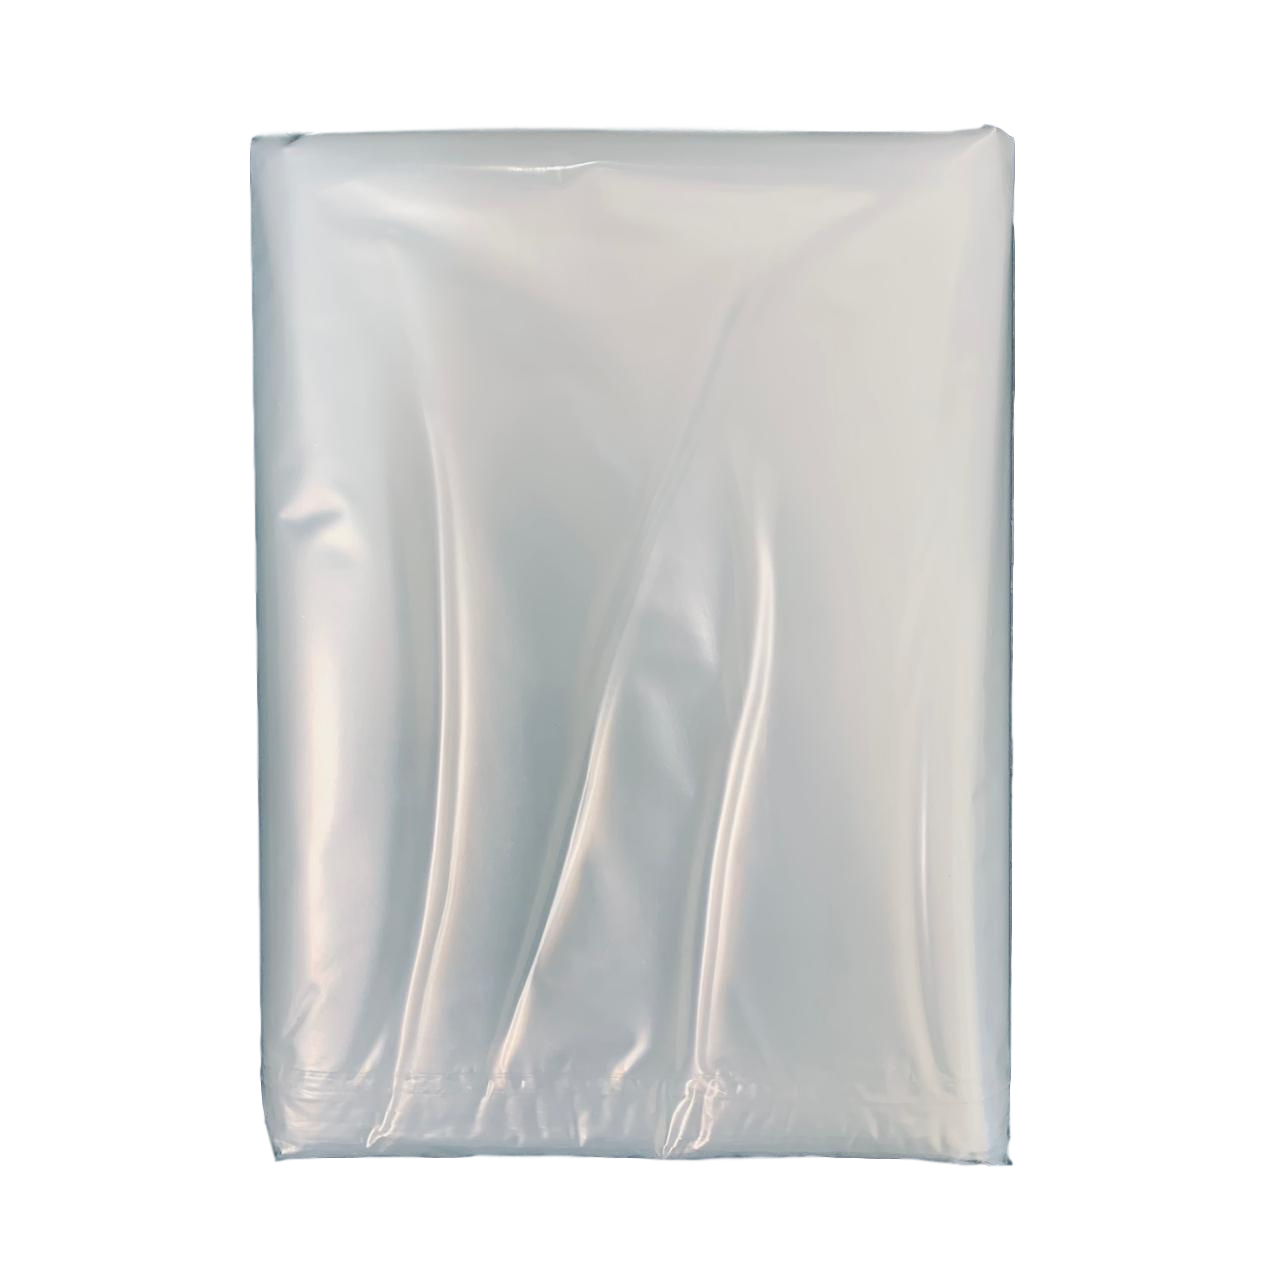 700 Bolsas Pequeñas De Plástico De 2x3 Pulgadas, Bols